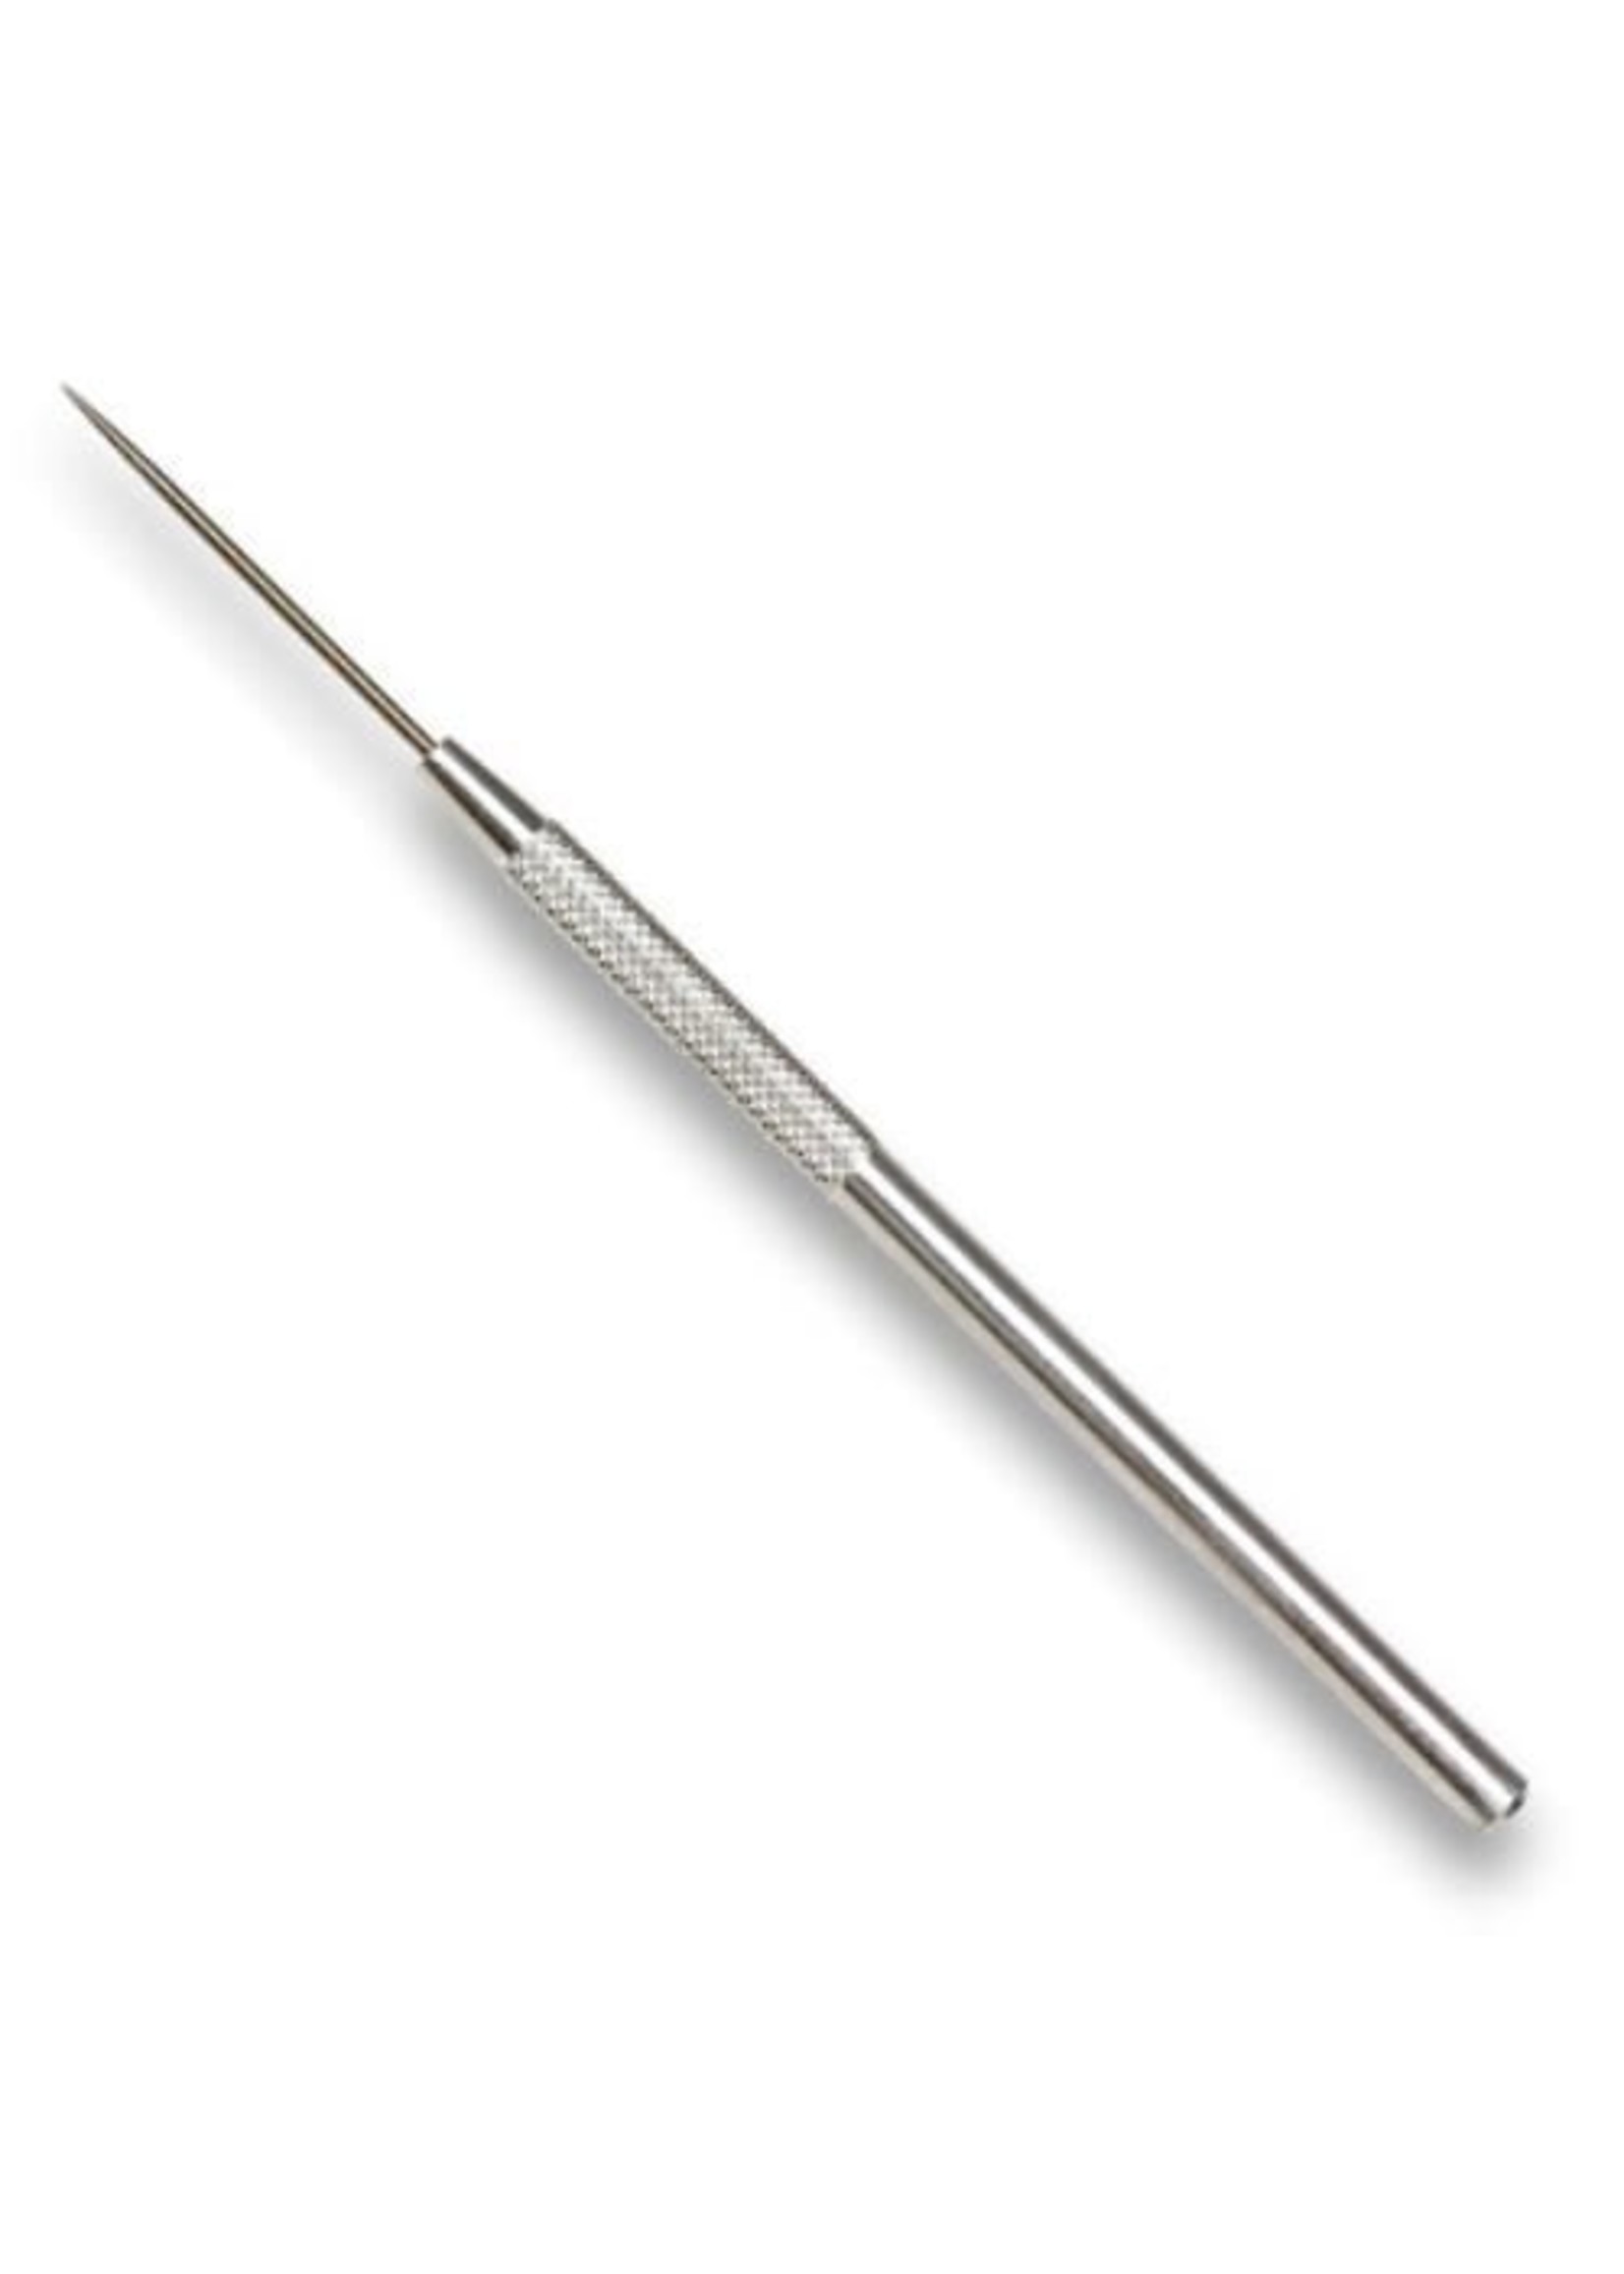 Kemper Tools Kemper Pro Needle Tool